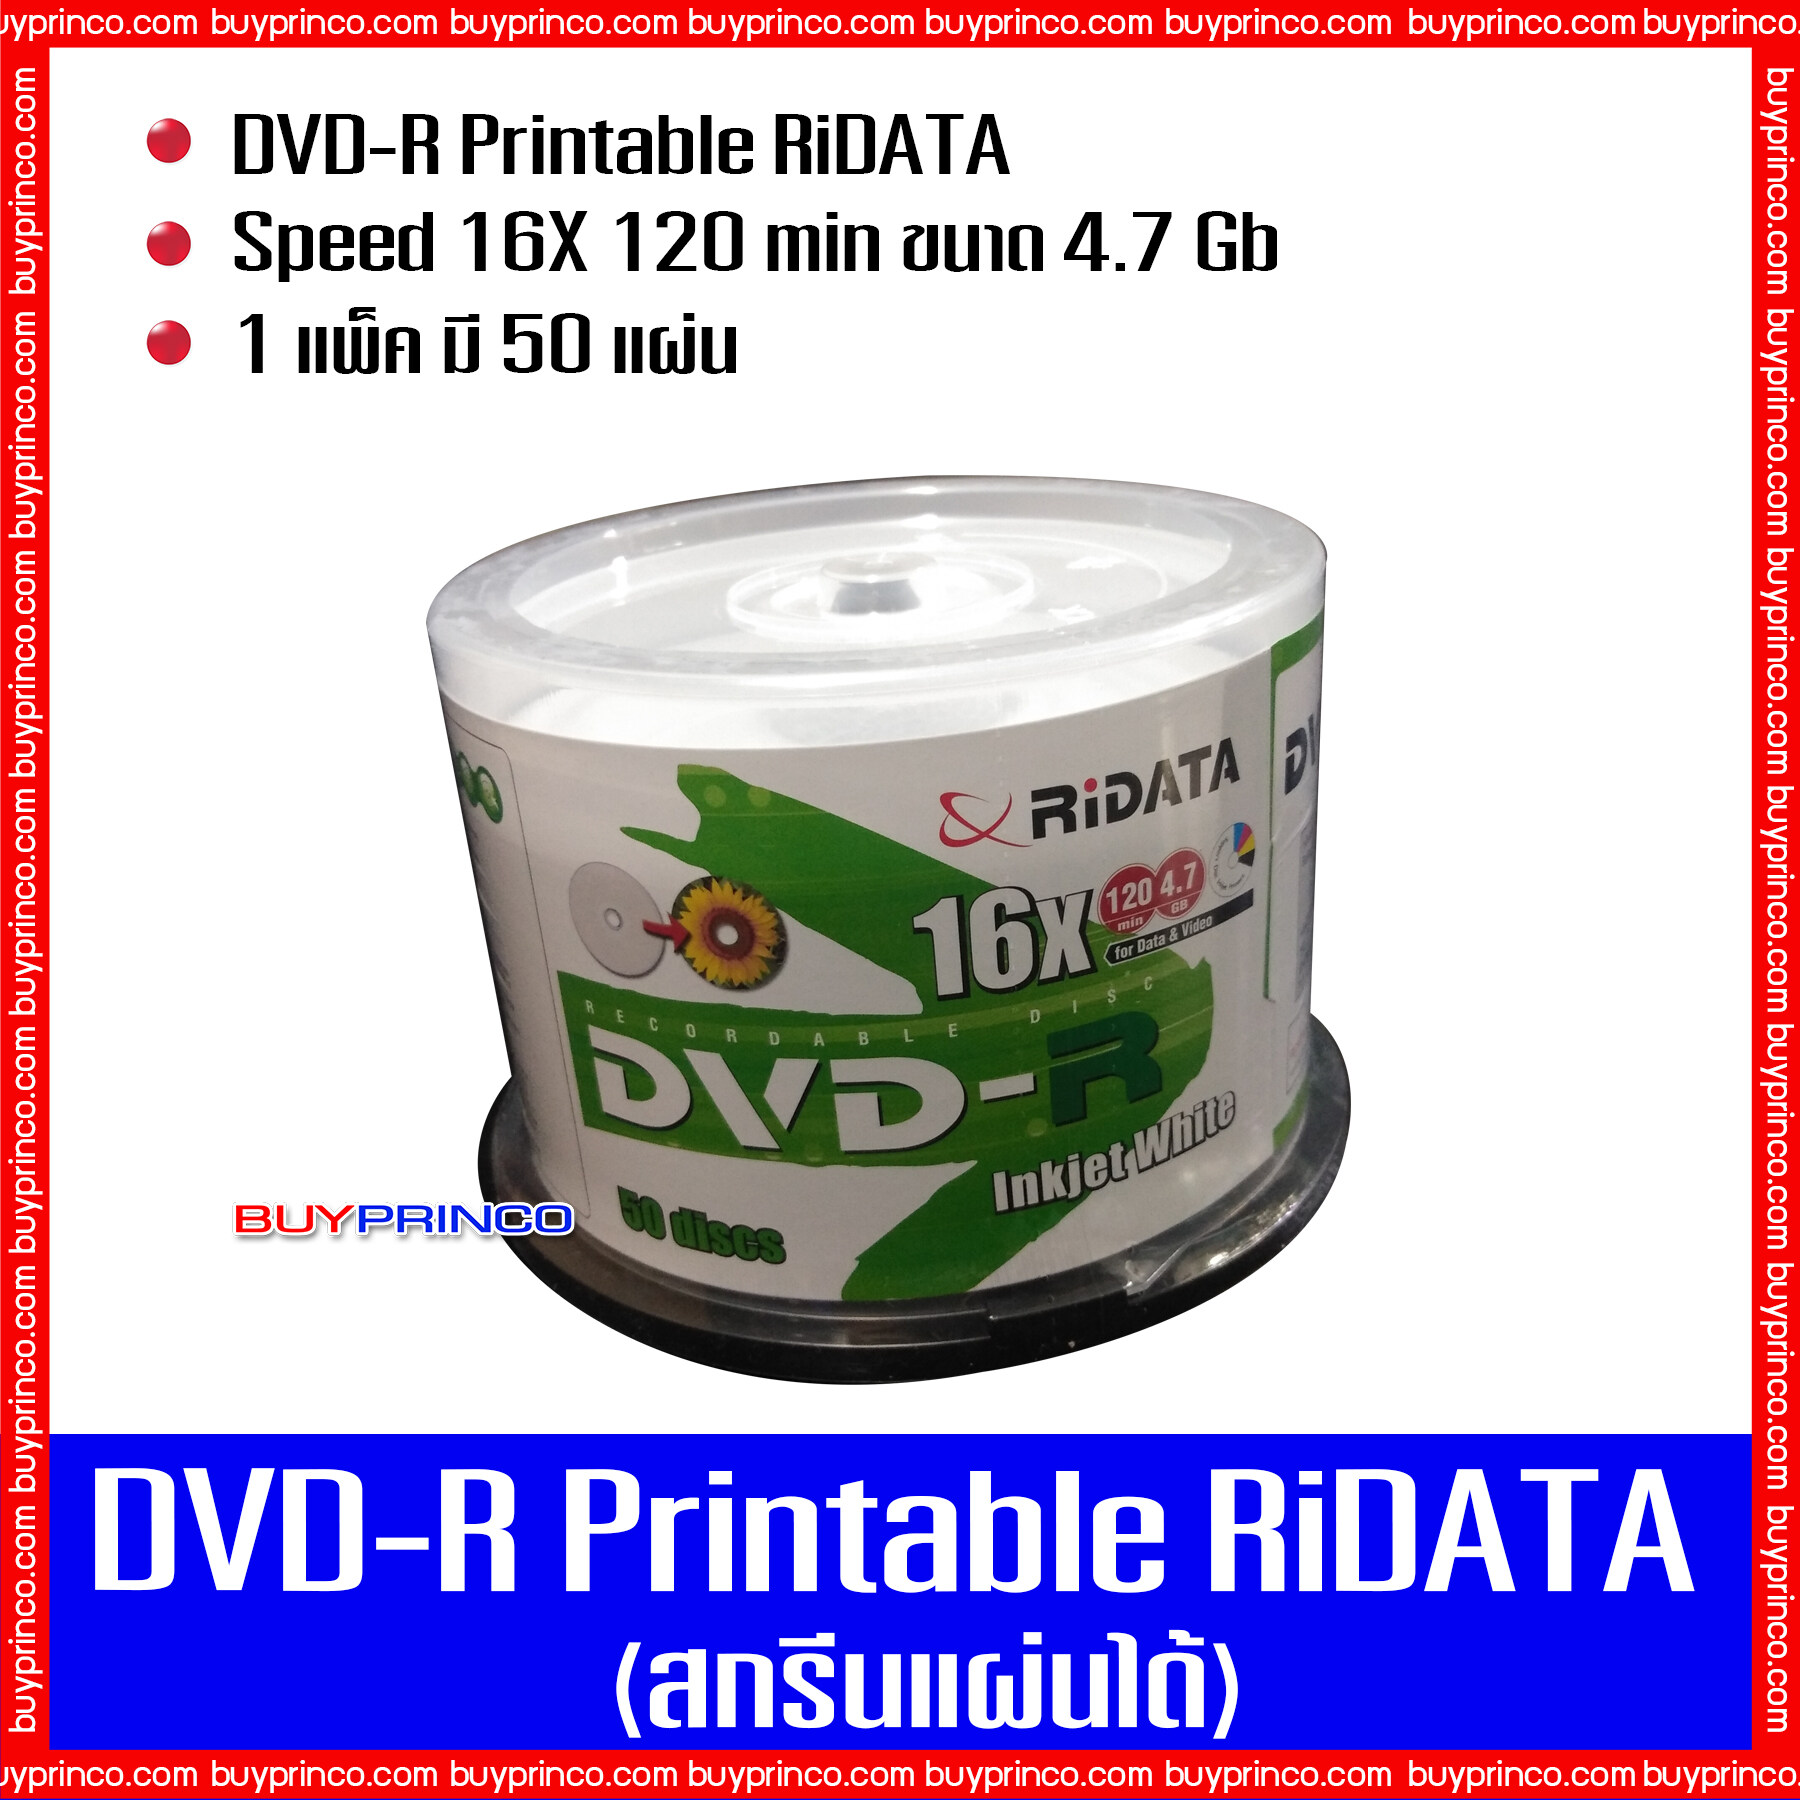 แผ่นดีวีดี ไรดาต้า Dvd-R Printable Ridata (แผ่นดีวีดีสกรีนได้). 